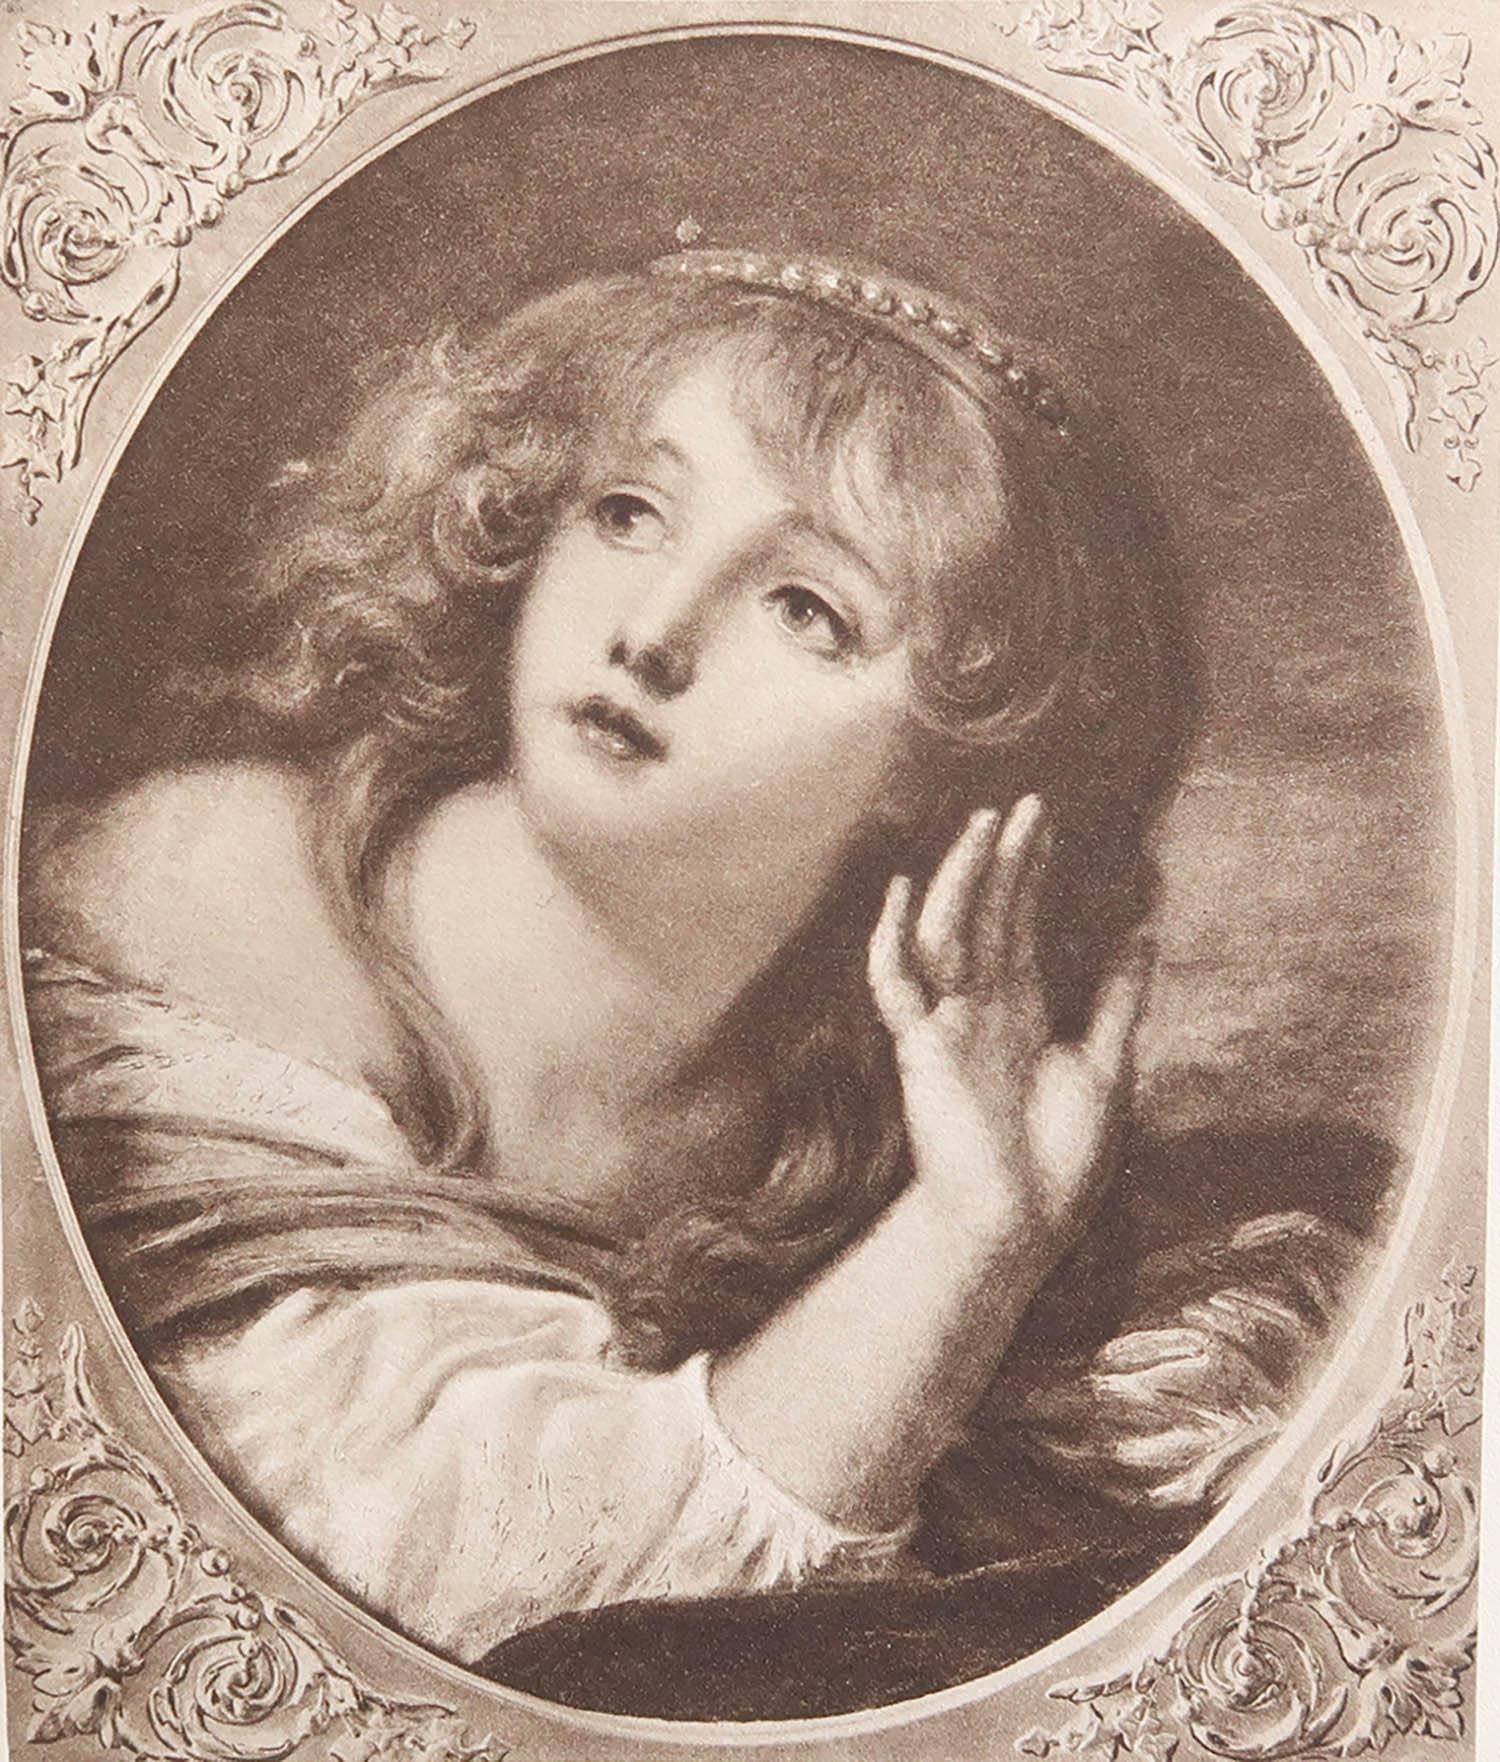 Schönes Bild von Greuze

Fototiefdruck

Auf hochwertigem Velinpapier

Herausgegeben von Hutchinson & Co. London. 1912

Das Maß ist die Papiergröße

Ungerahmt